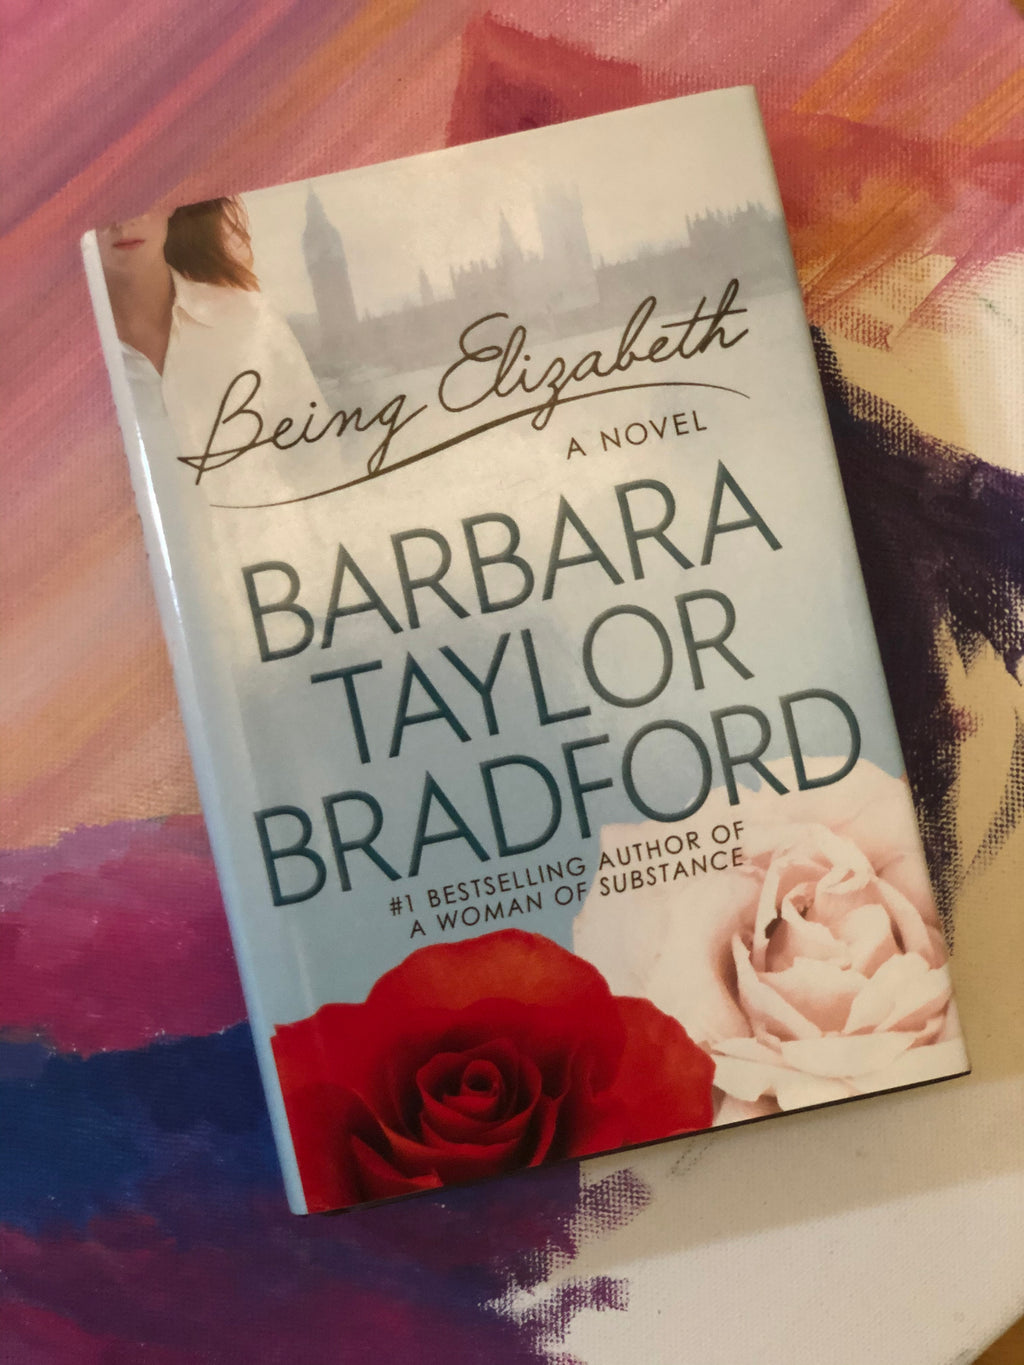 Being Elizabeth- By Barbara Taylor Bradford